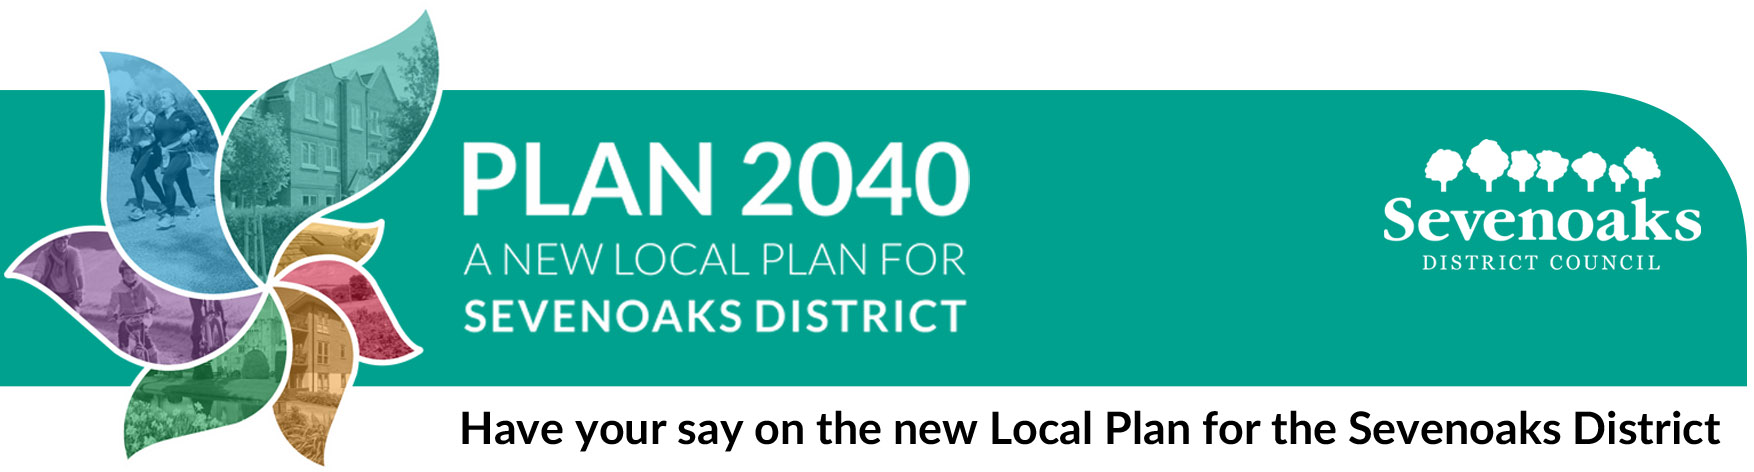 Plan 2040 A New Local Plan for Sevenoaks 